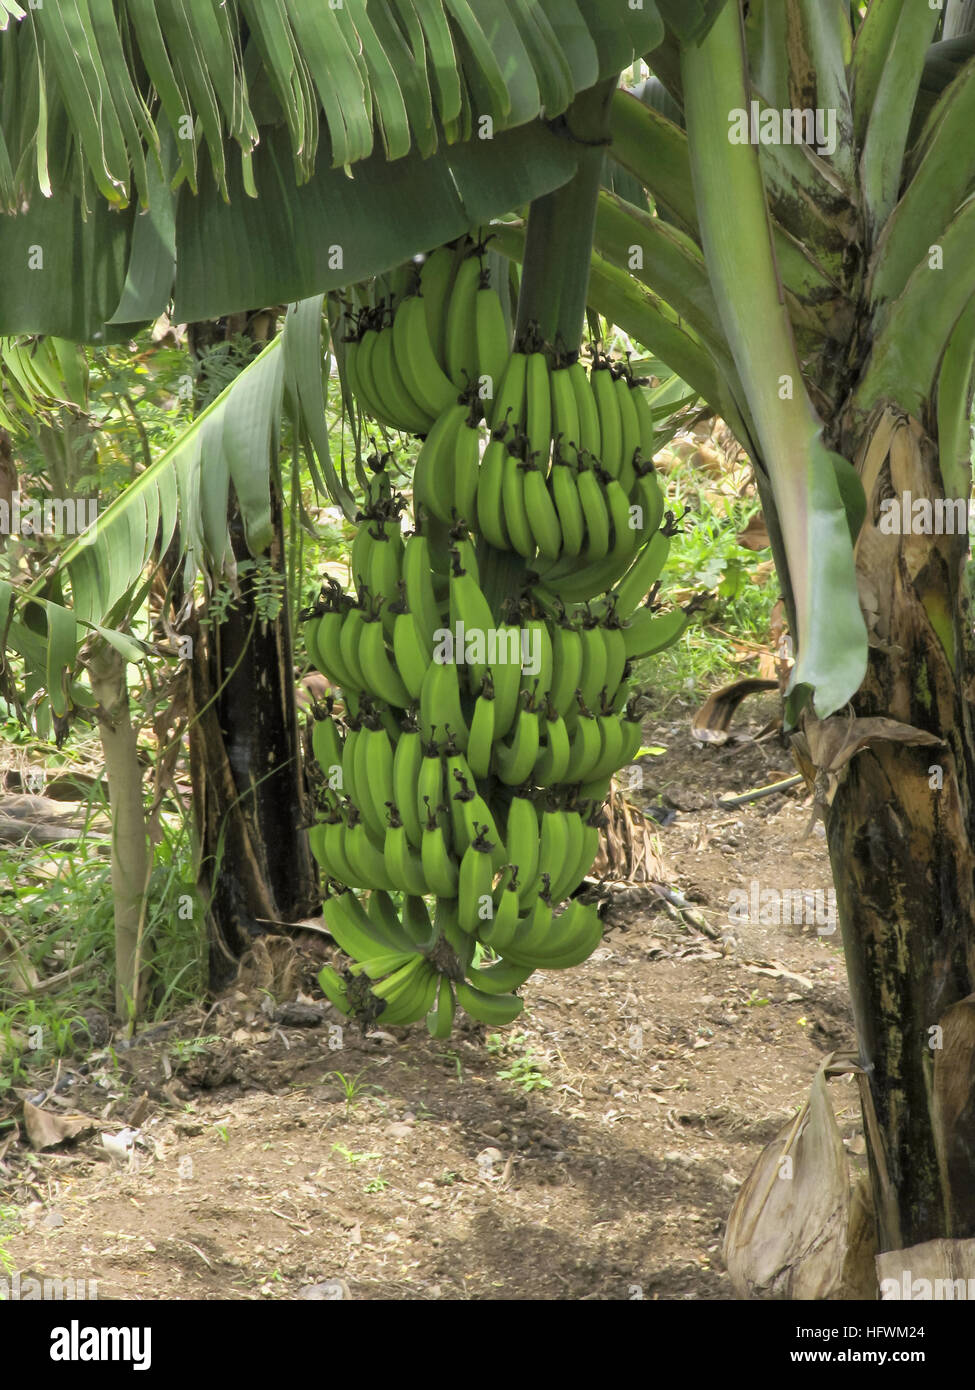 Banana tree and bunch, Musa paradisiaca Stock Photo